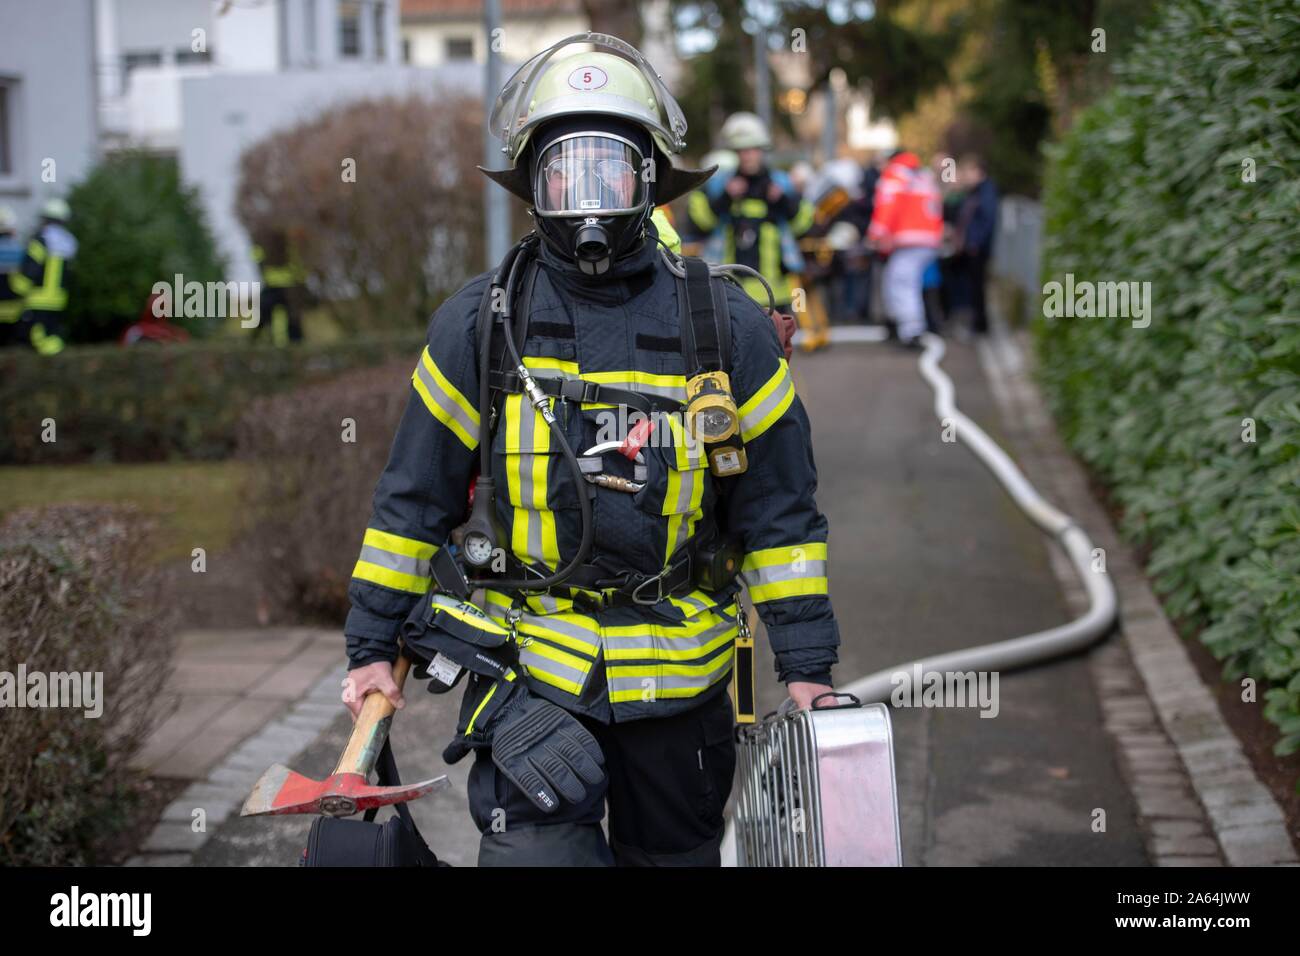 Pompier avec protection respiratoire en action, Stuttgart, Allemagne Banque D'Images